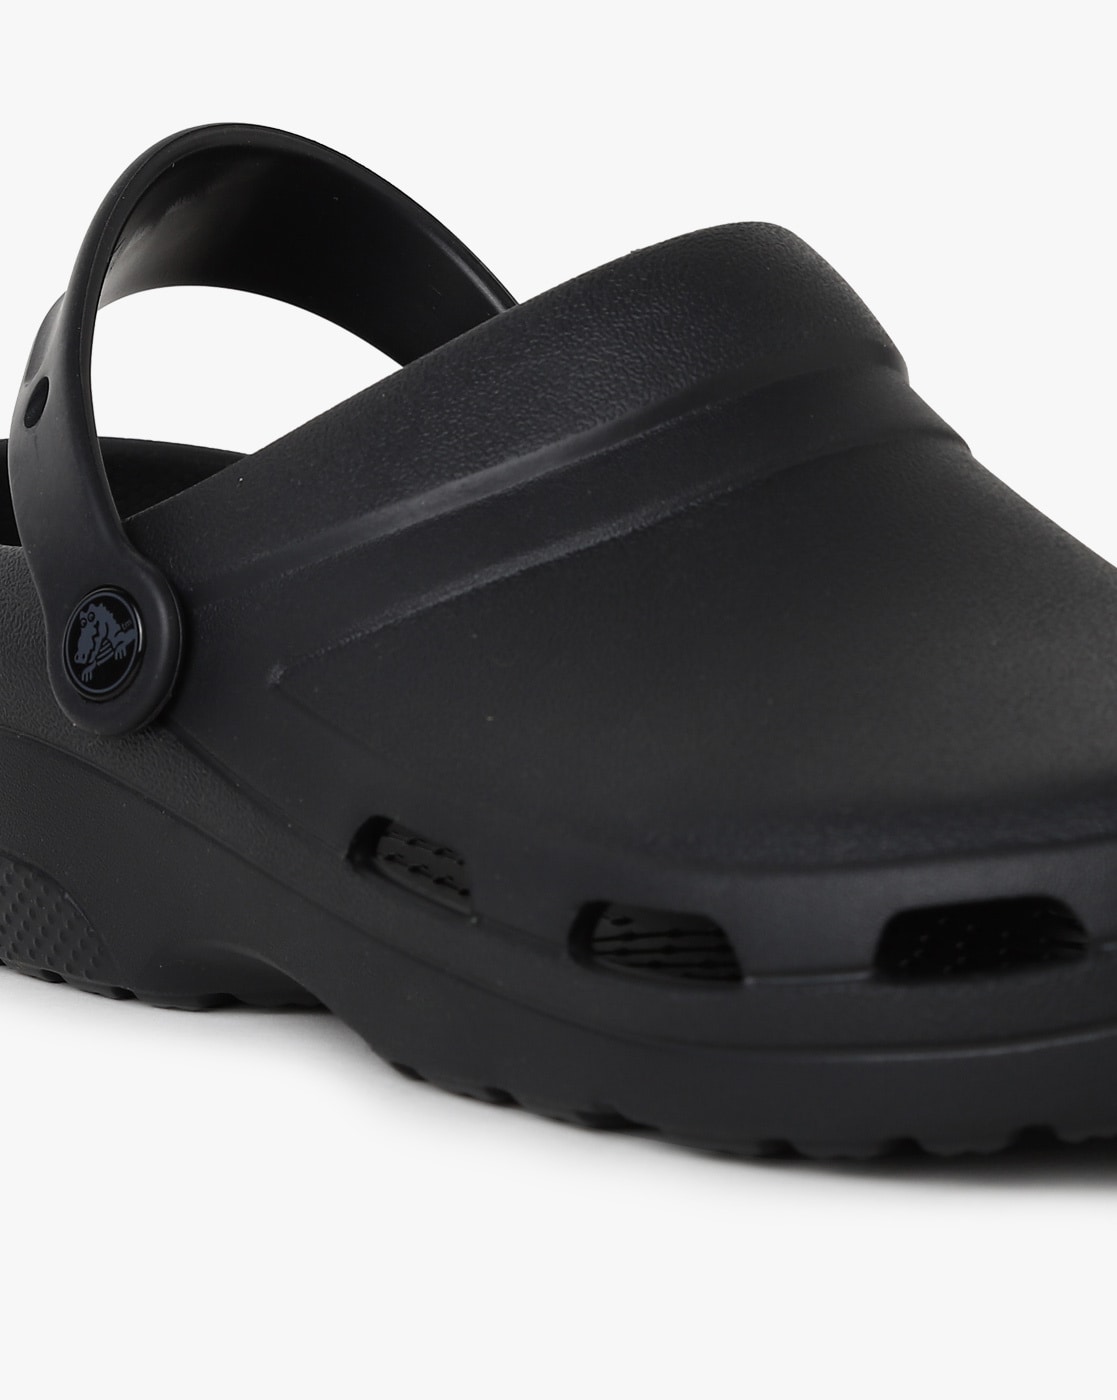 Buy Black Sandals for Men by CROCS Online 